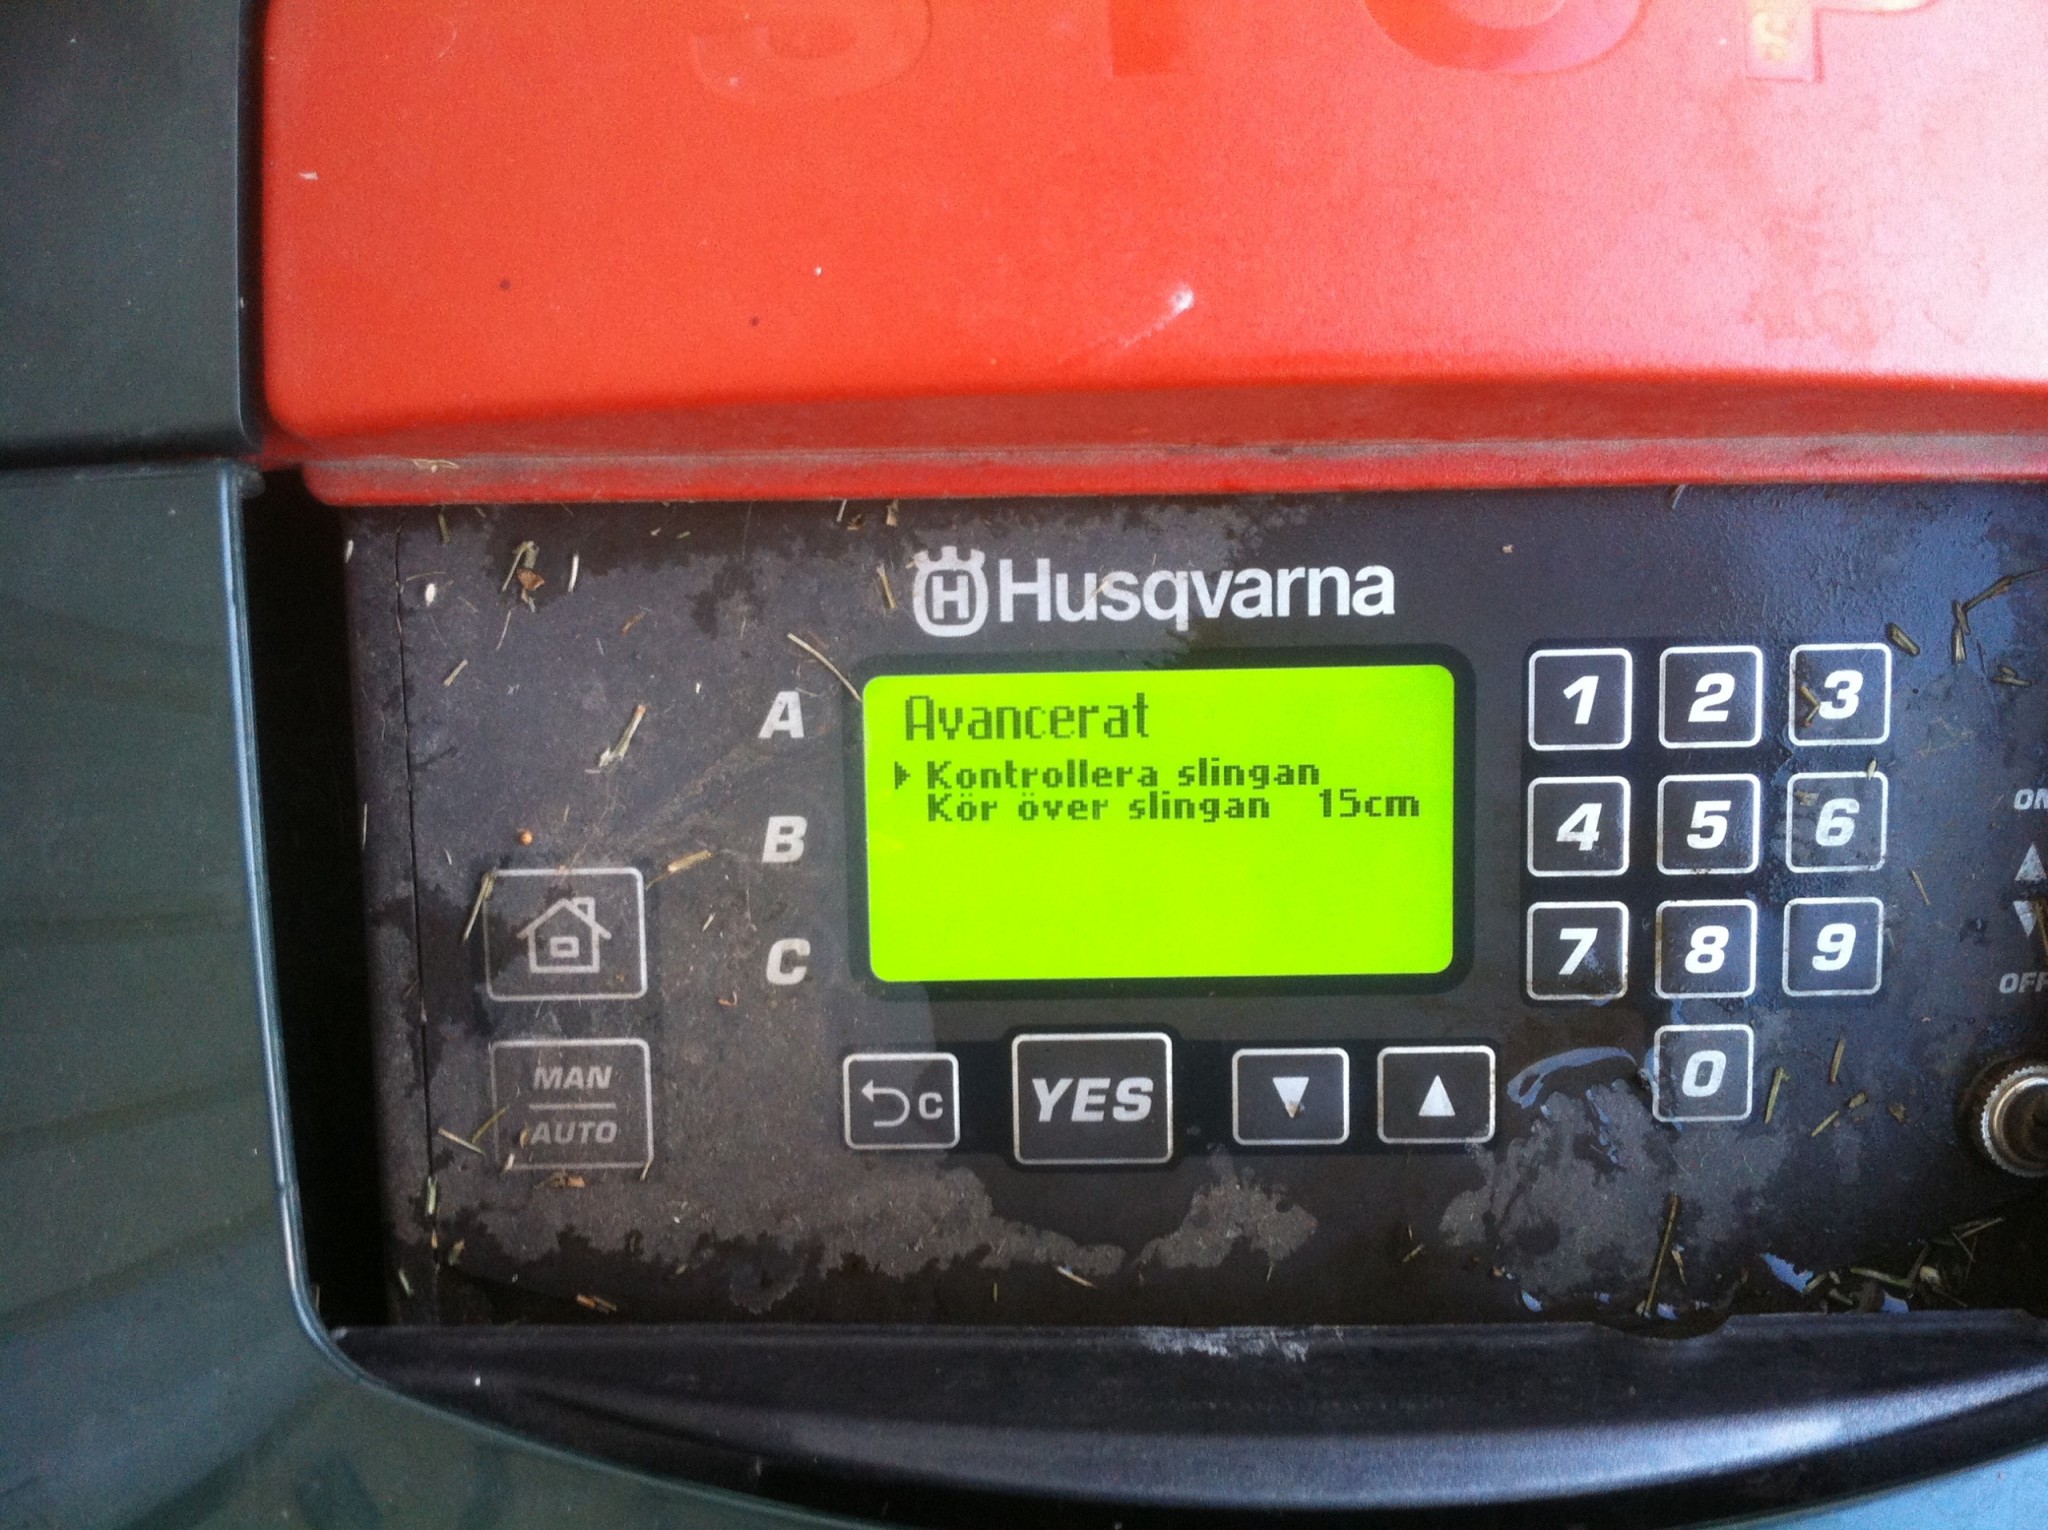 rygte lomme Ru Automower 220 ac - har meny som ej finns i manual? | Byggahus.se